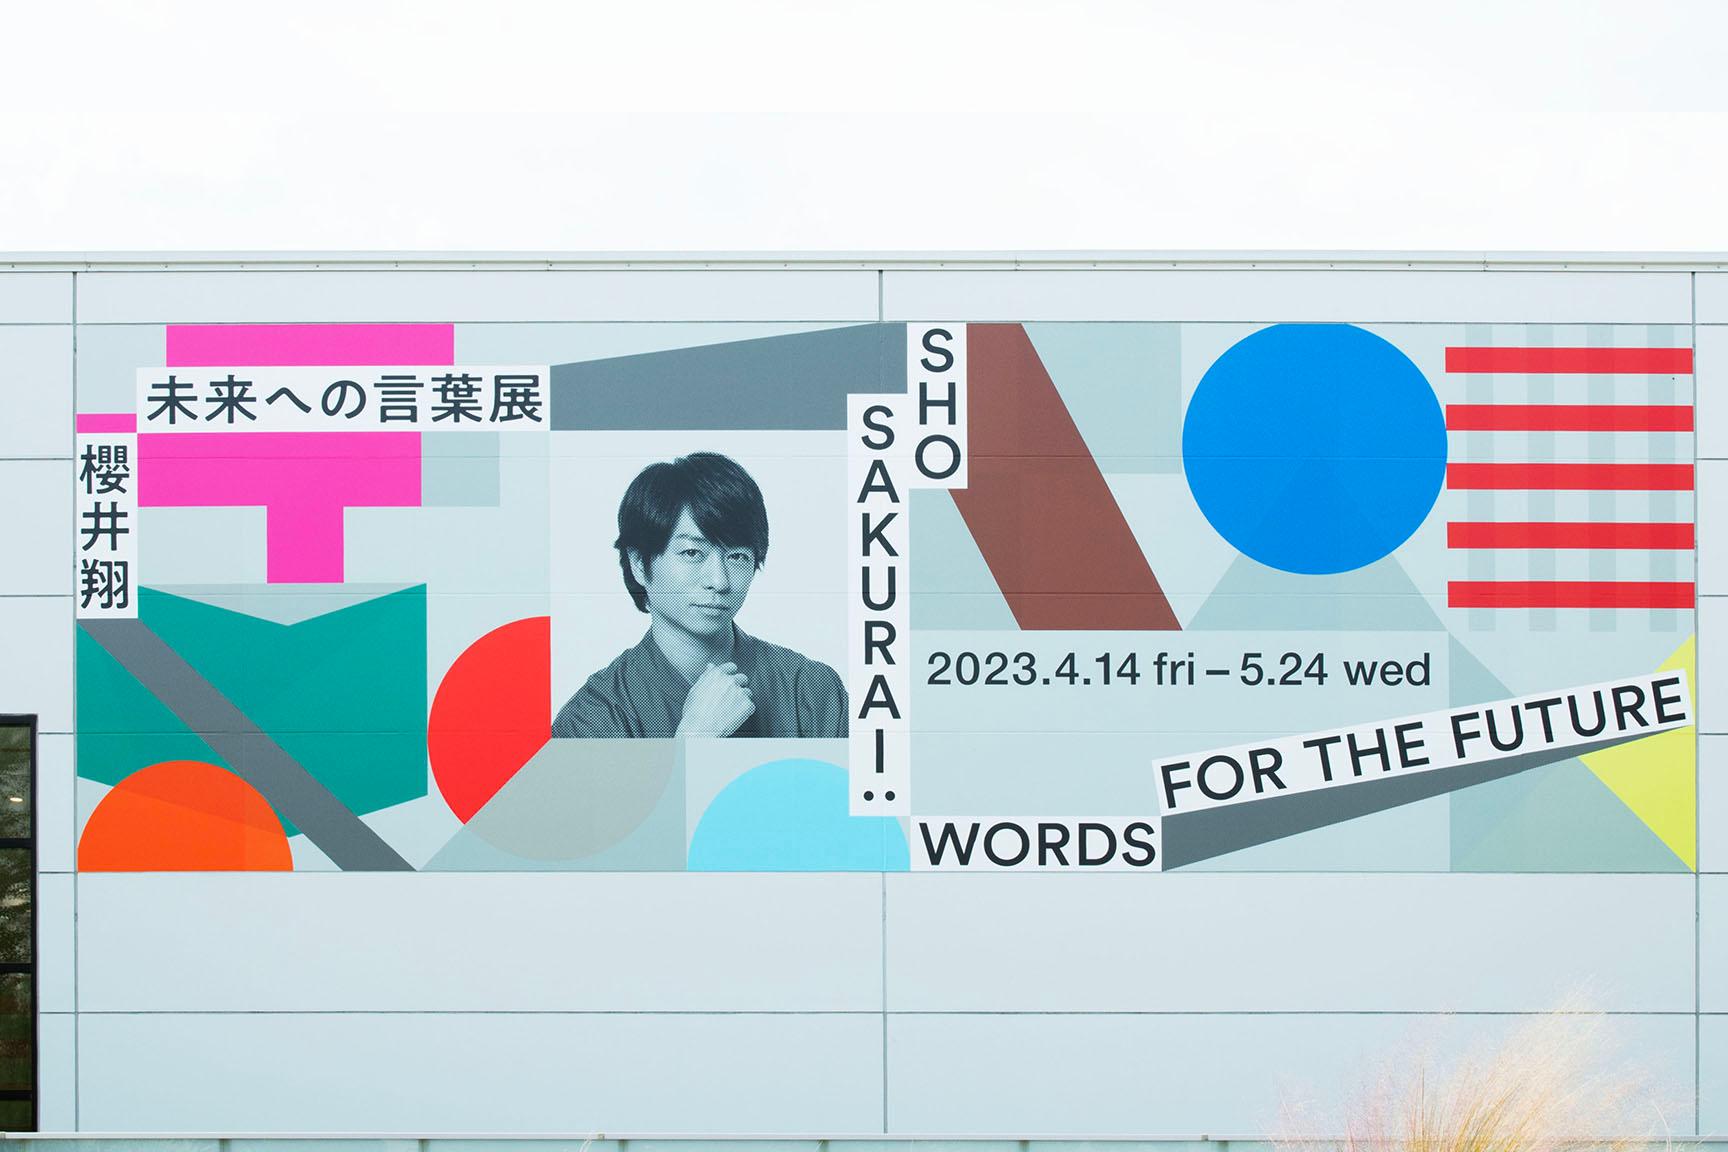 【独占】櫻井翔とクリエイターが語る『櫻井翔 未来への言葉展』。